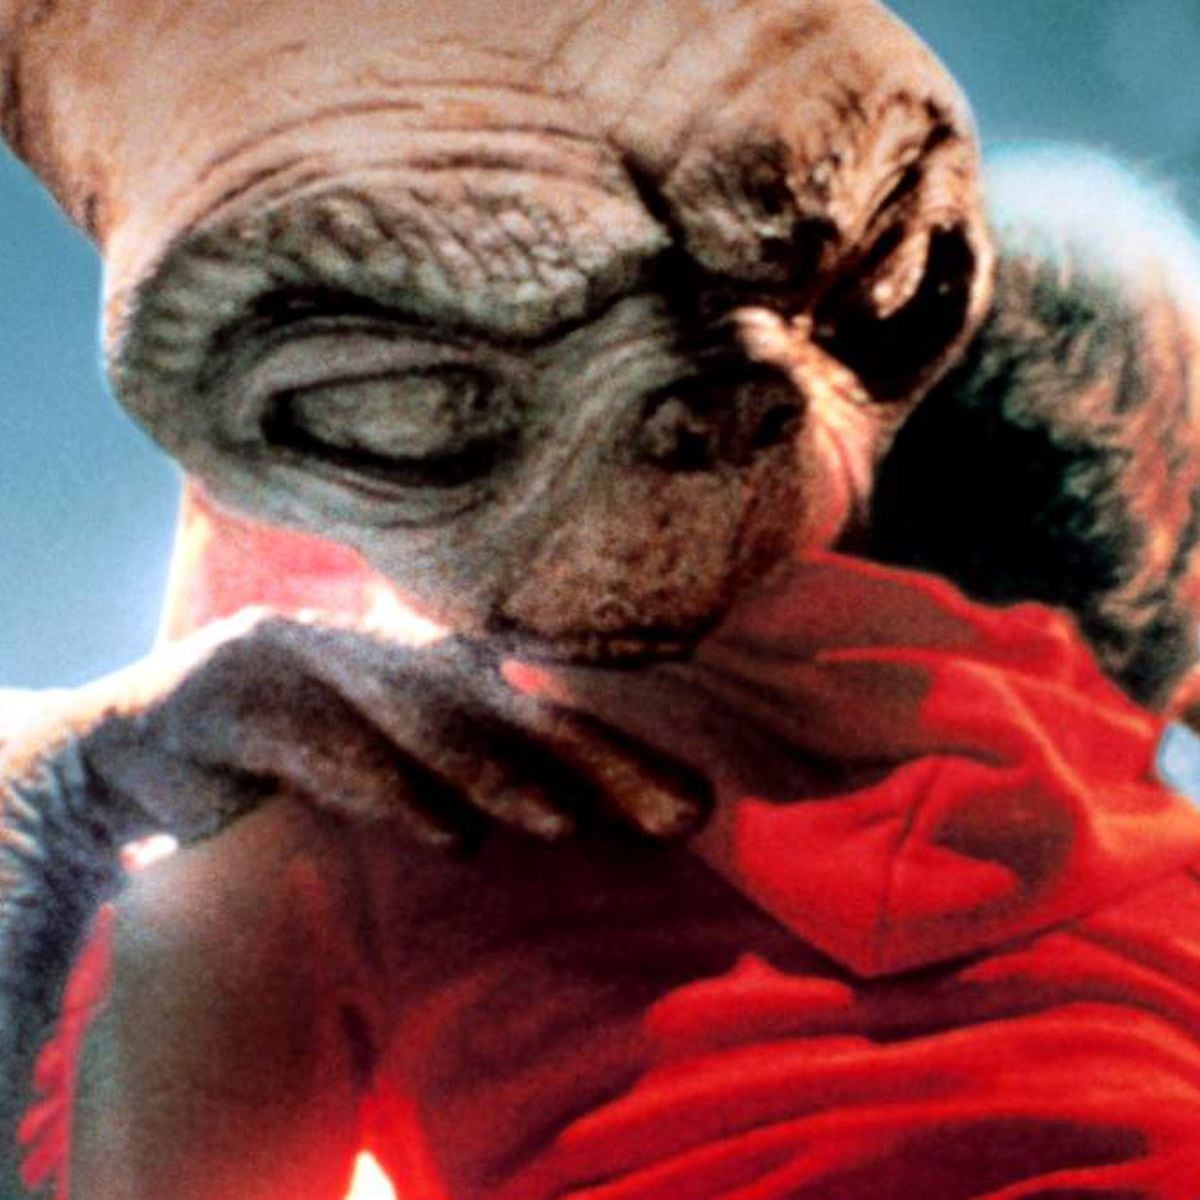 El final de 'ET, el extraterrestre' explicado